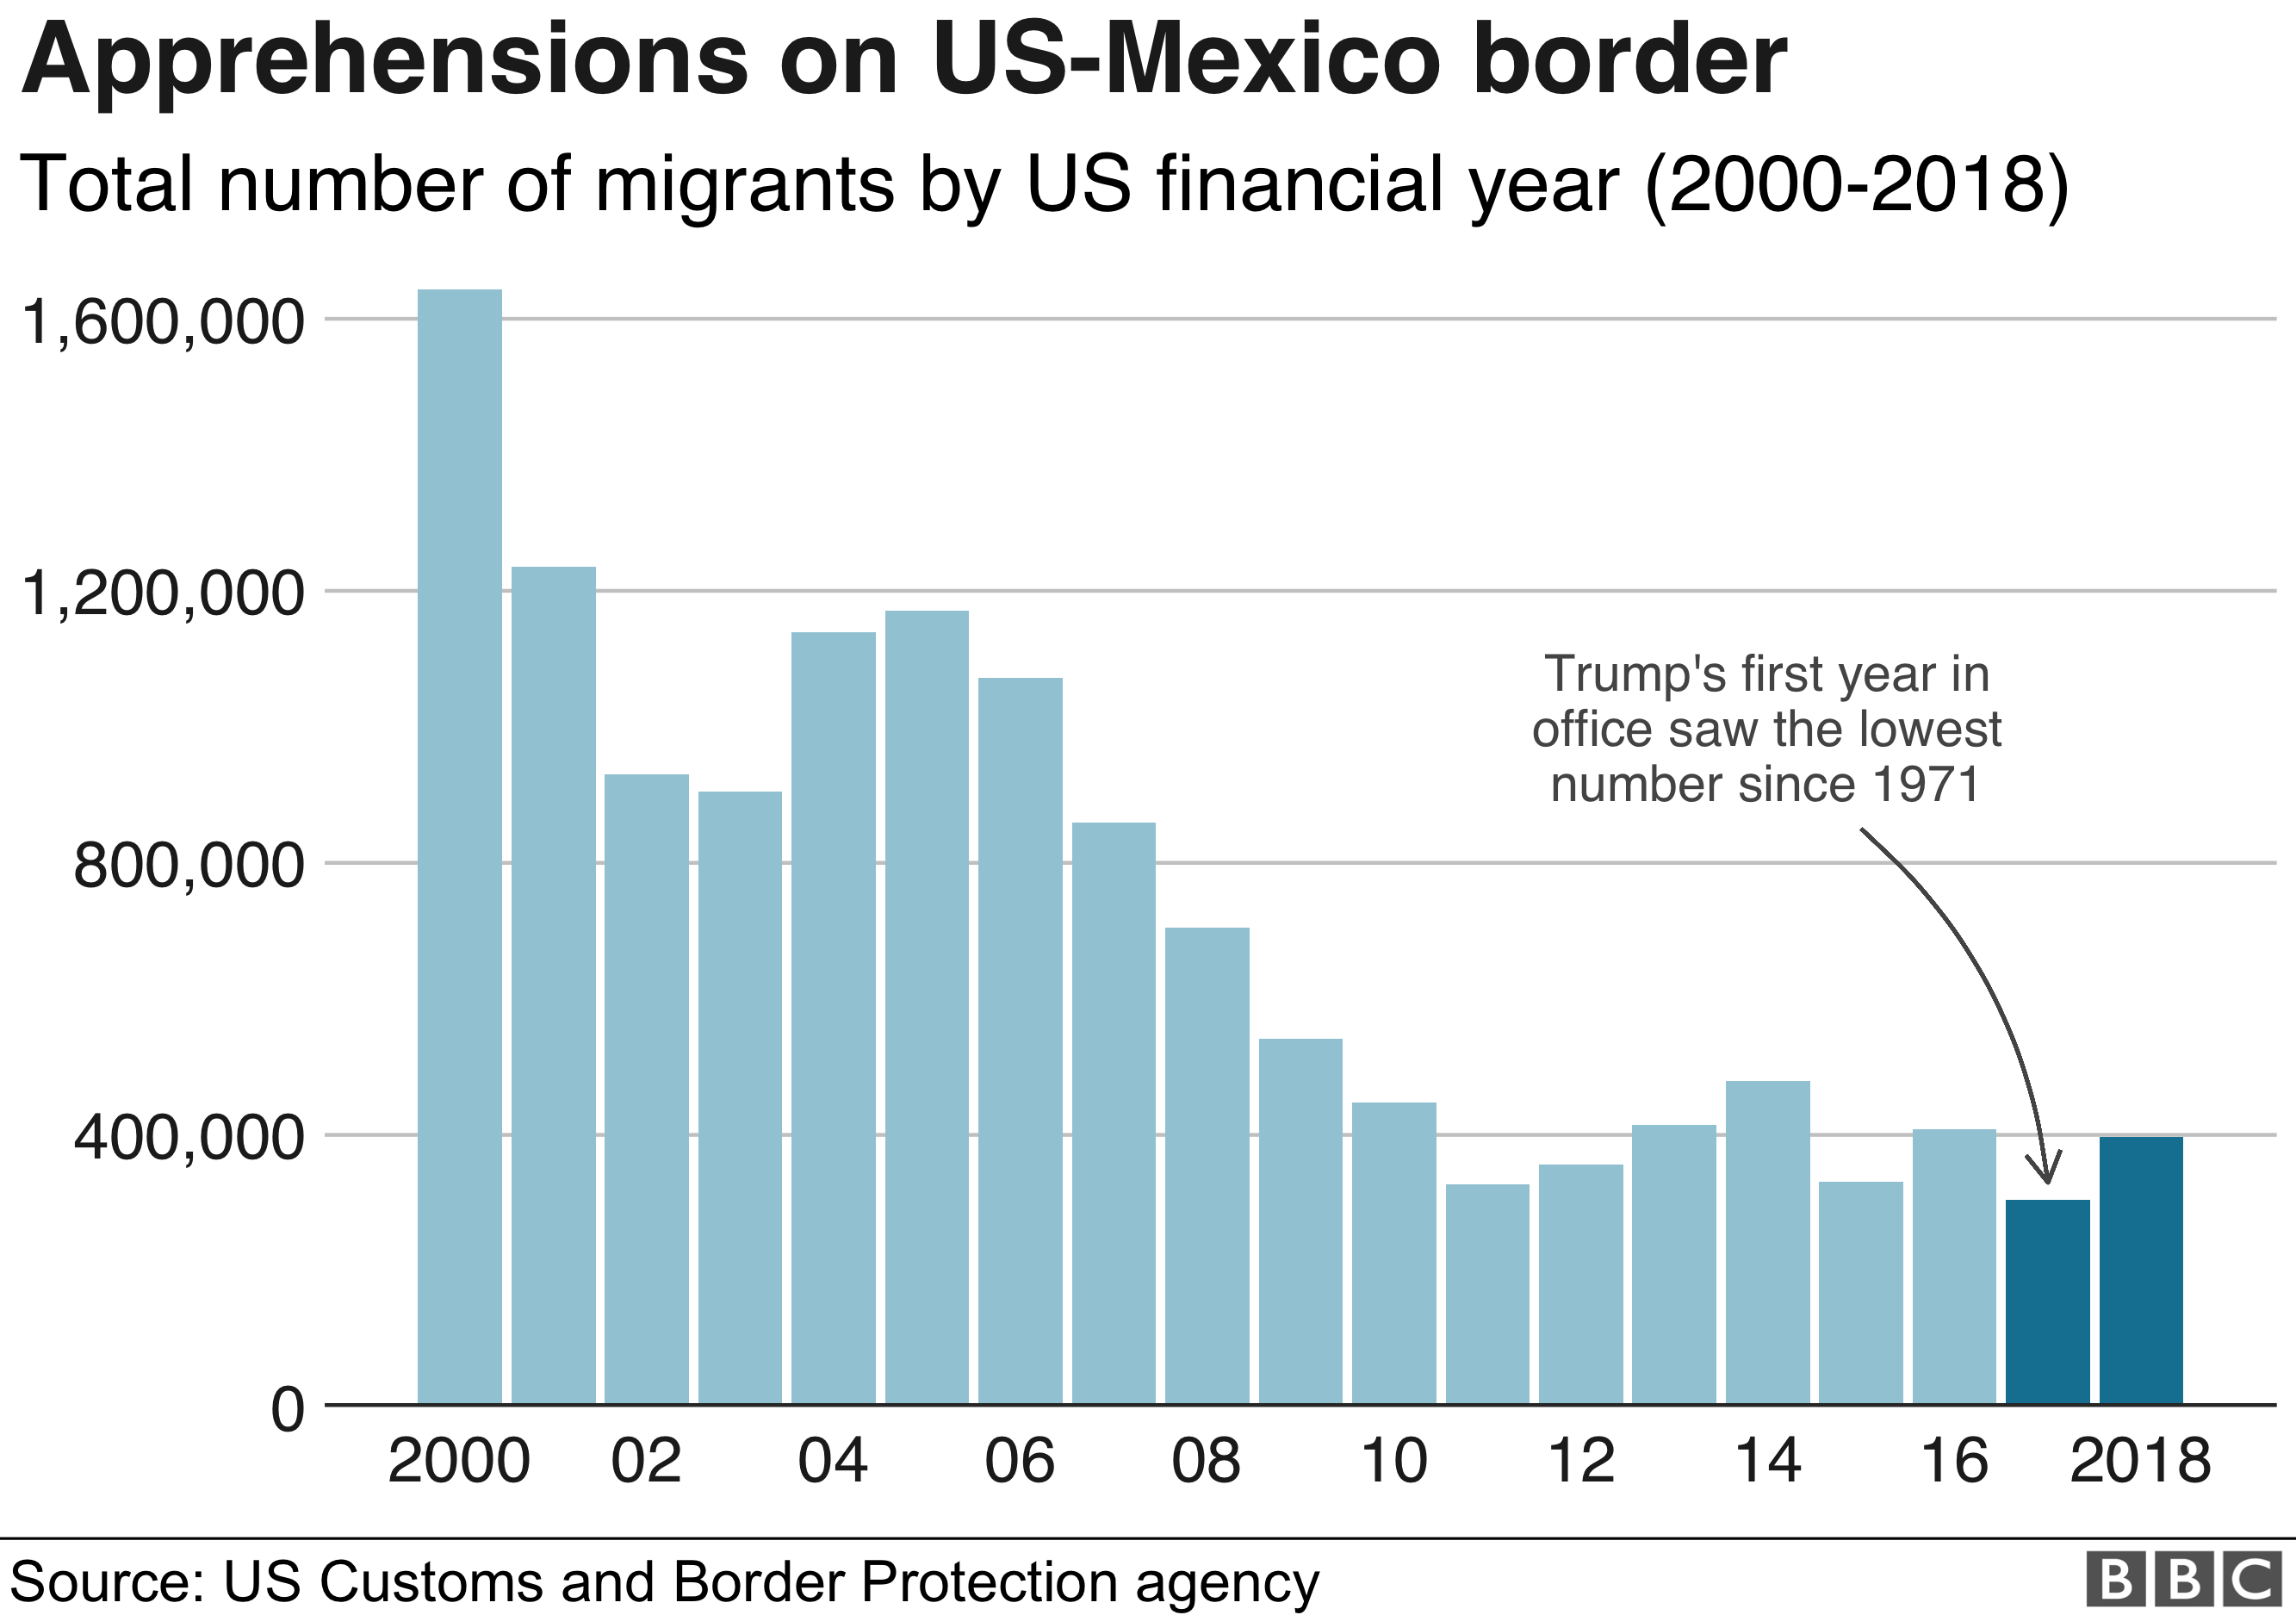 Диаграмма: Уровень опасений на границе США и Мексики в 2017 г. был самым низким с 2000 г.